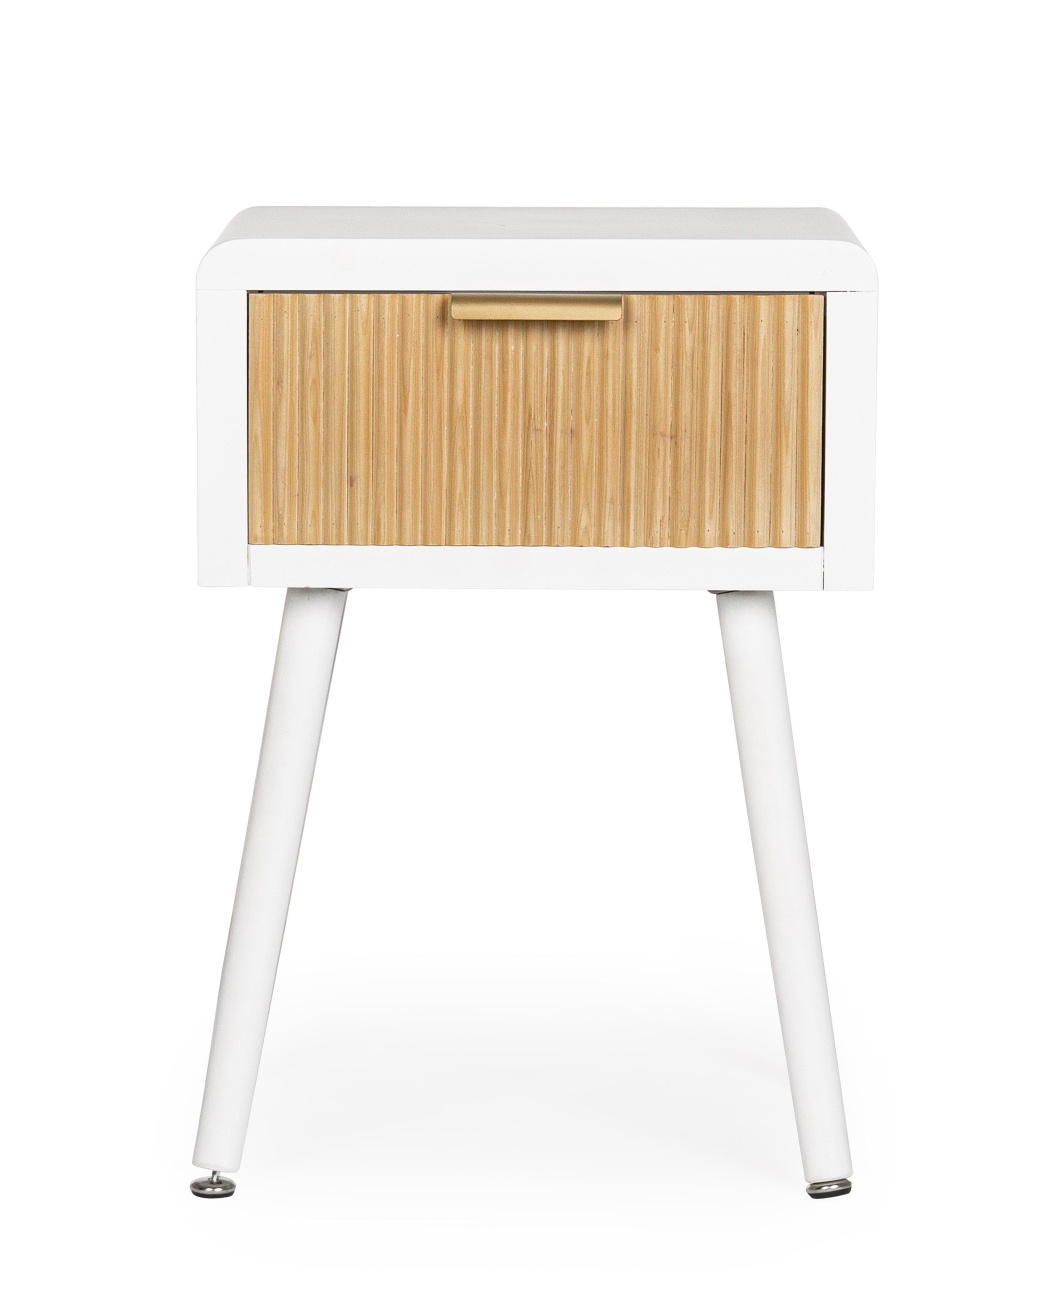 Der Nachttisch Charly überzeugt mit seinem modernen Design. Gefertigt wurde er aus Paulowniaholz, welches einen natürlichen Farbton besitzt. Das Gestell ist aus MDF und hat eine weiße Farbe. Der Nachttisch besitzt eine Breite von 40 cm.